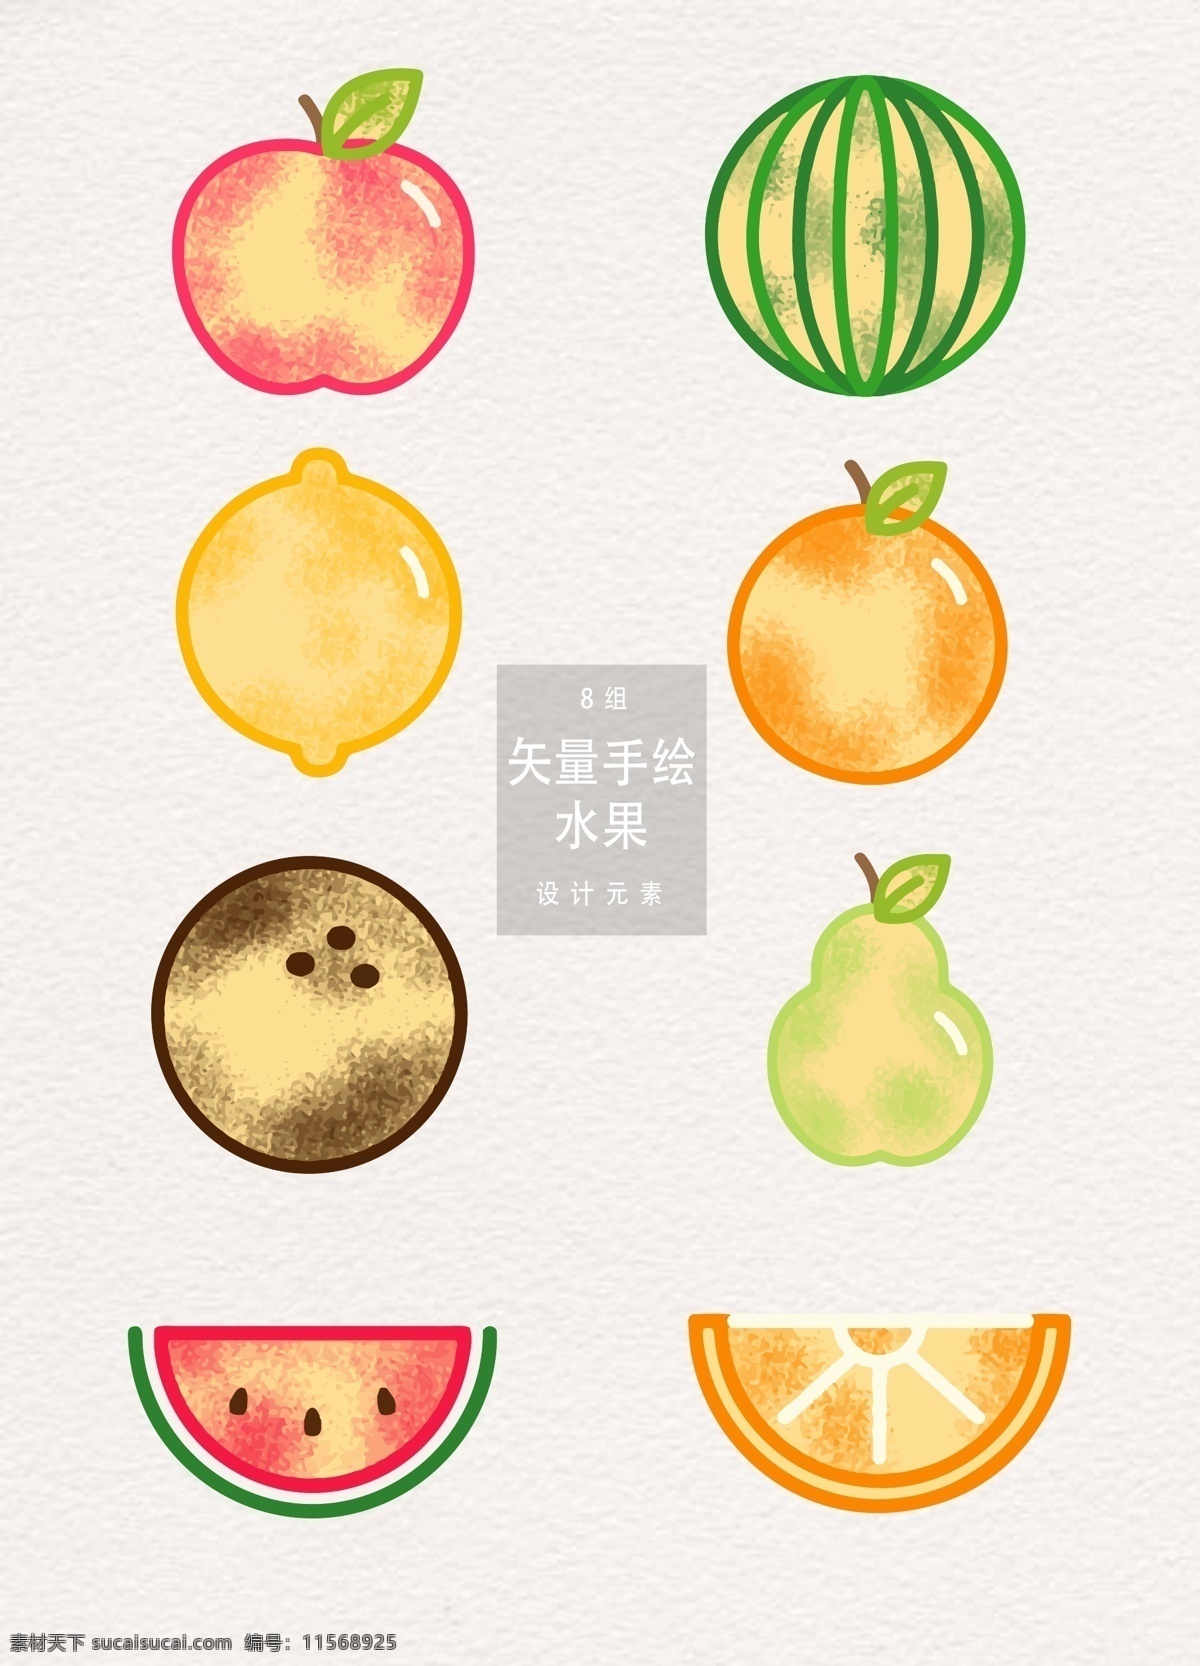 创意 手绘 水果 夏季 植物 柠檬 苹果 手绘水果 夏天 西瓜 元素 食物 橙子 椰子 梨子